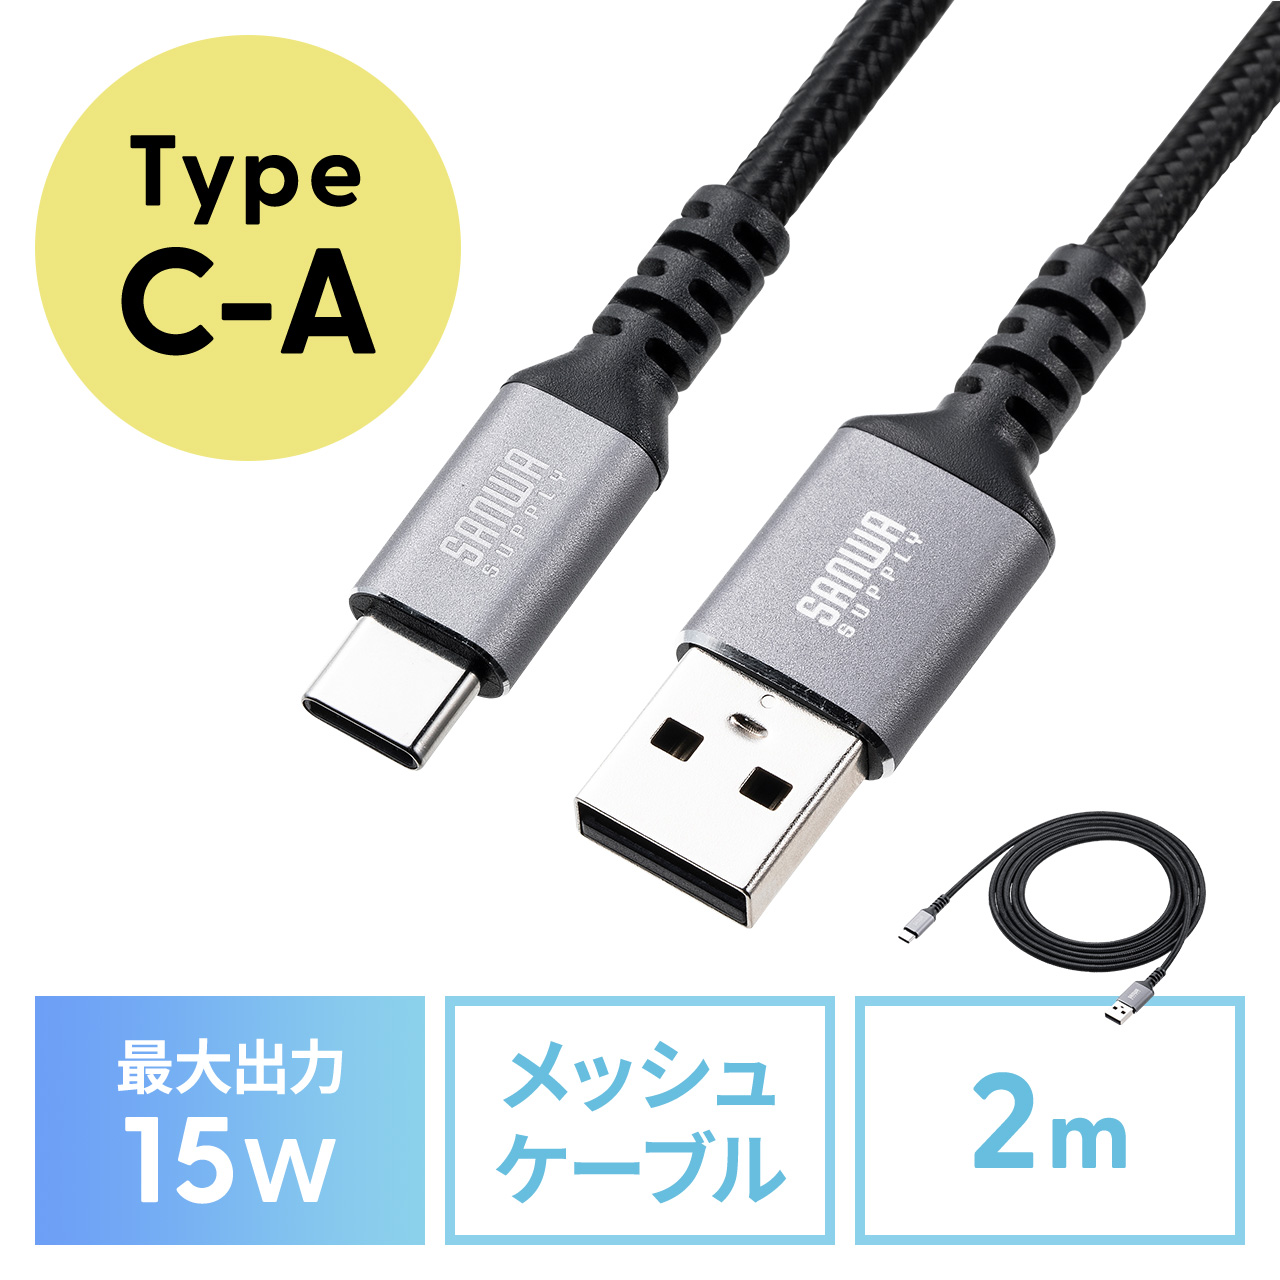 USB Type-Cケーブル 15W ポリエステルメッシュ 高耐久 USB-C AtoC タイプC USB2.0 充電 データ転送 スマホ タブレット Nintendo Switch 2m 500-USB084-2BK